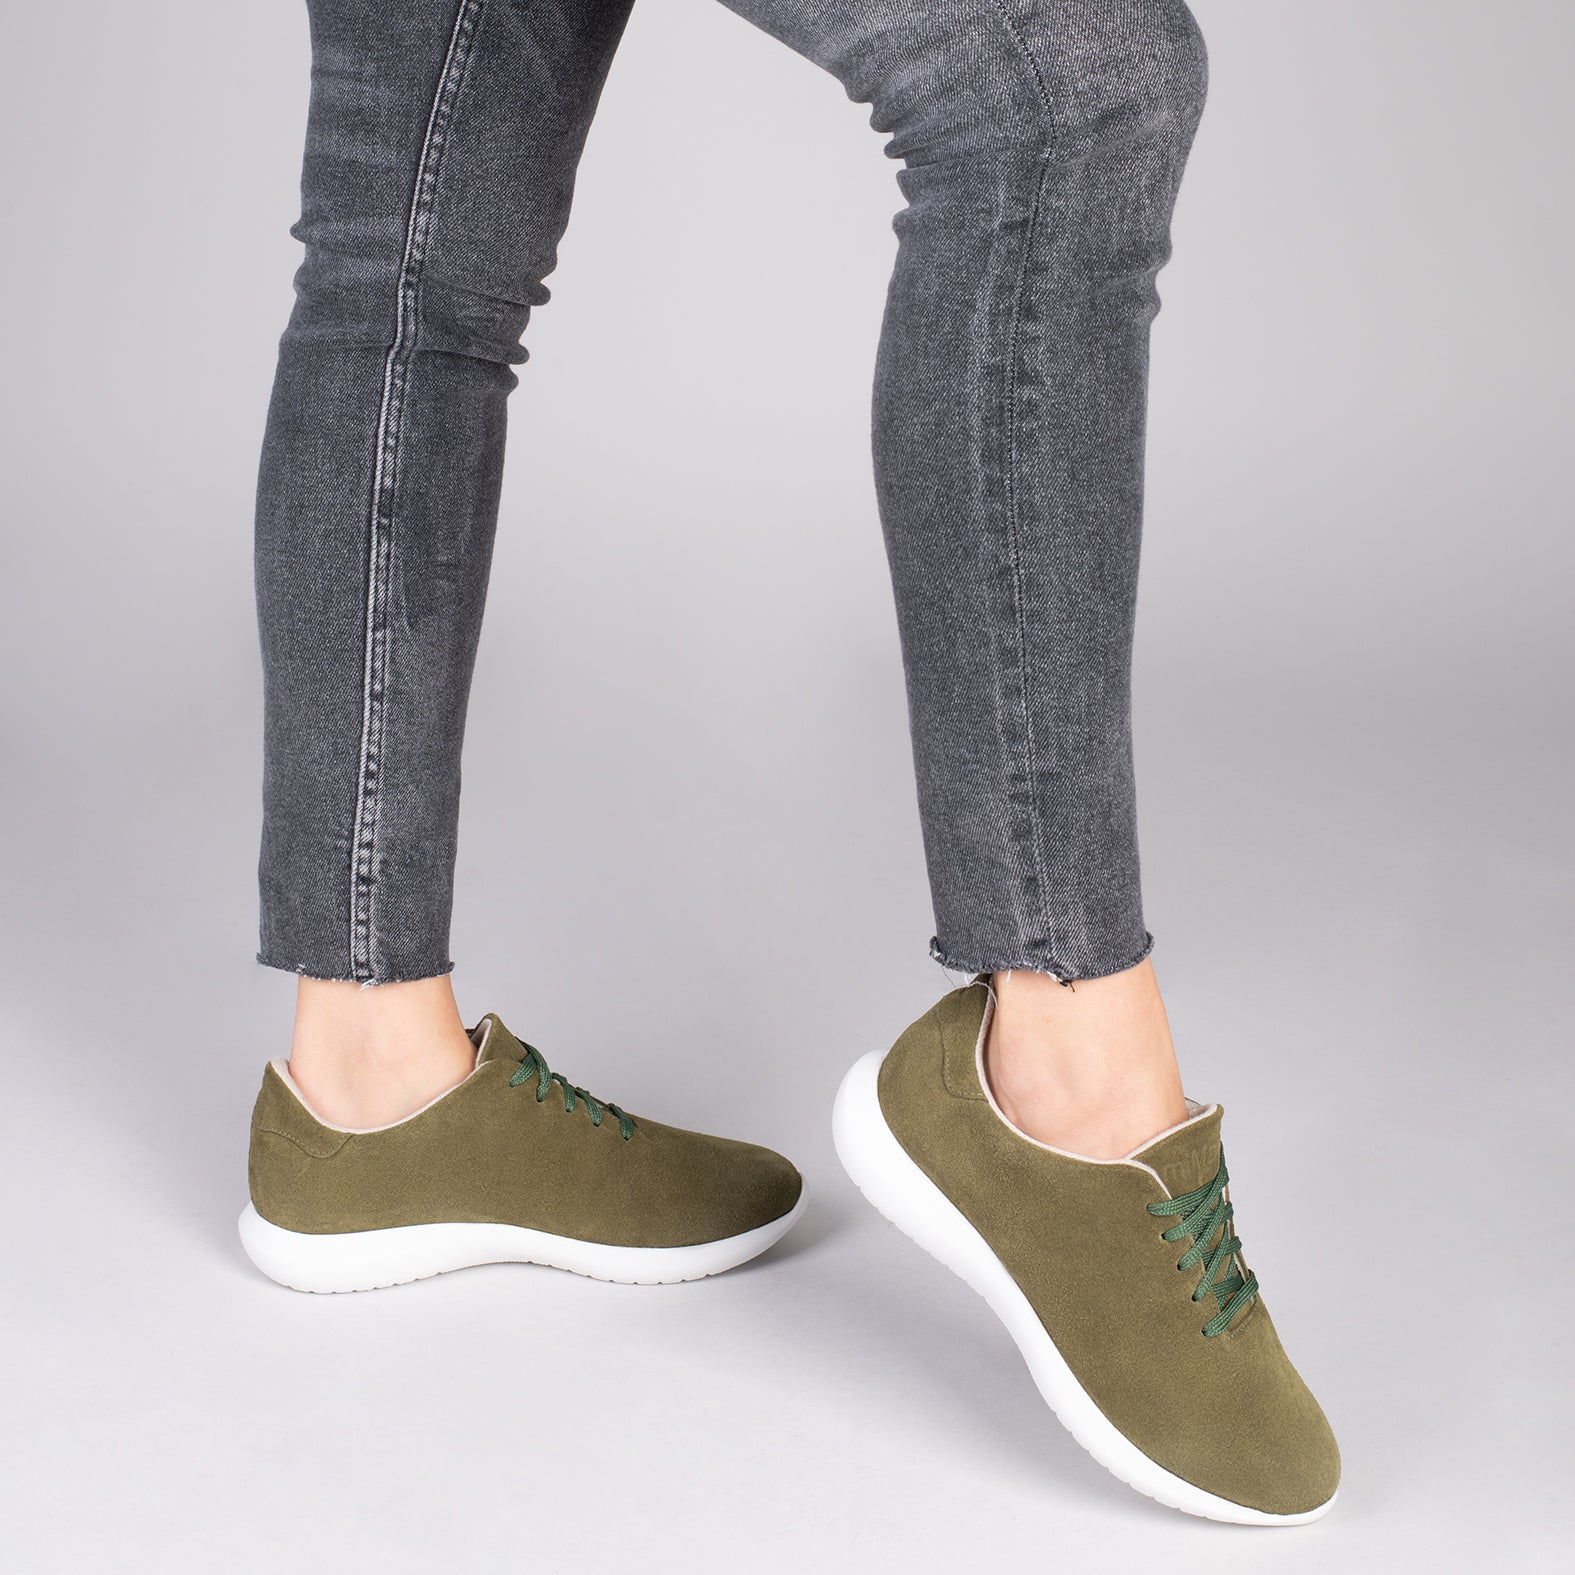 WALK – GREEN comfortable women’s sneakers